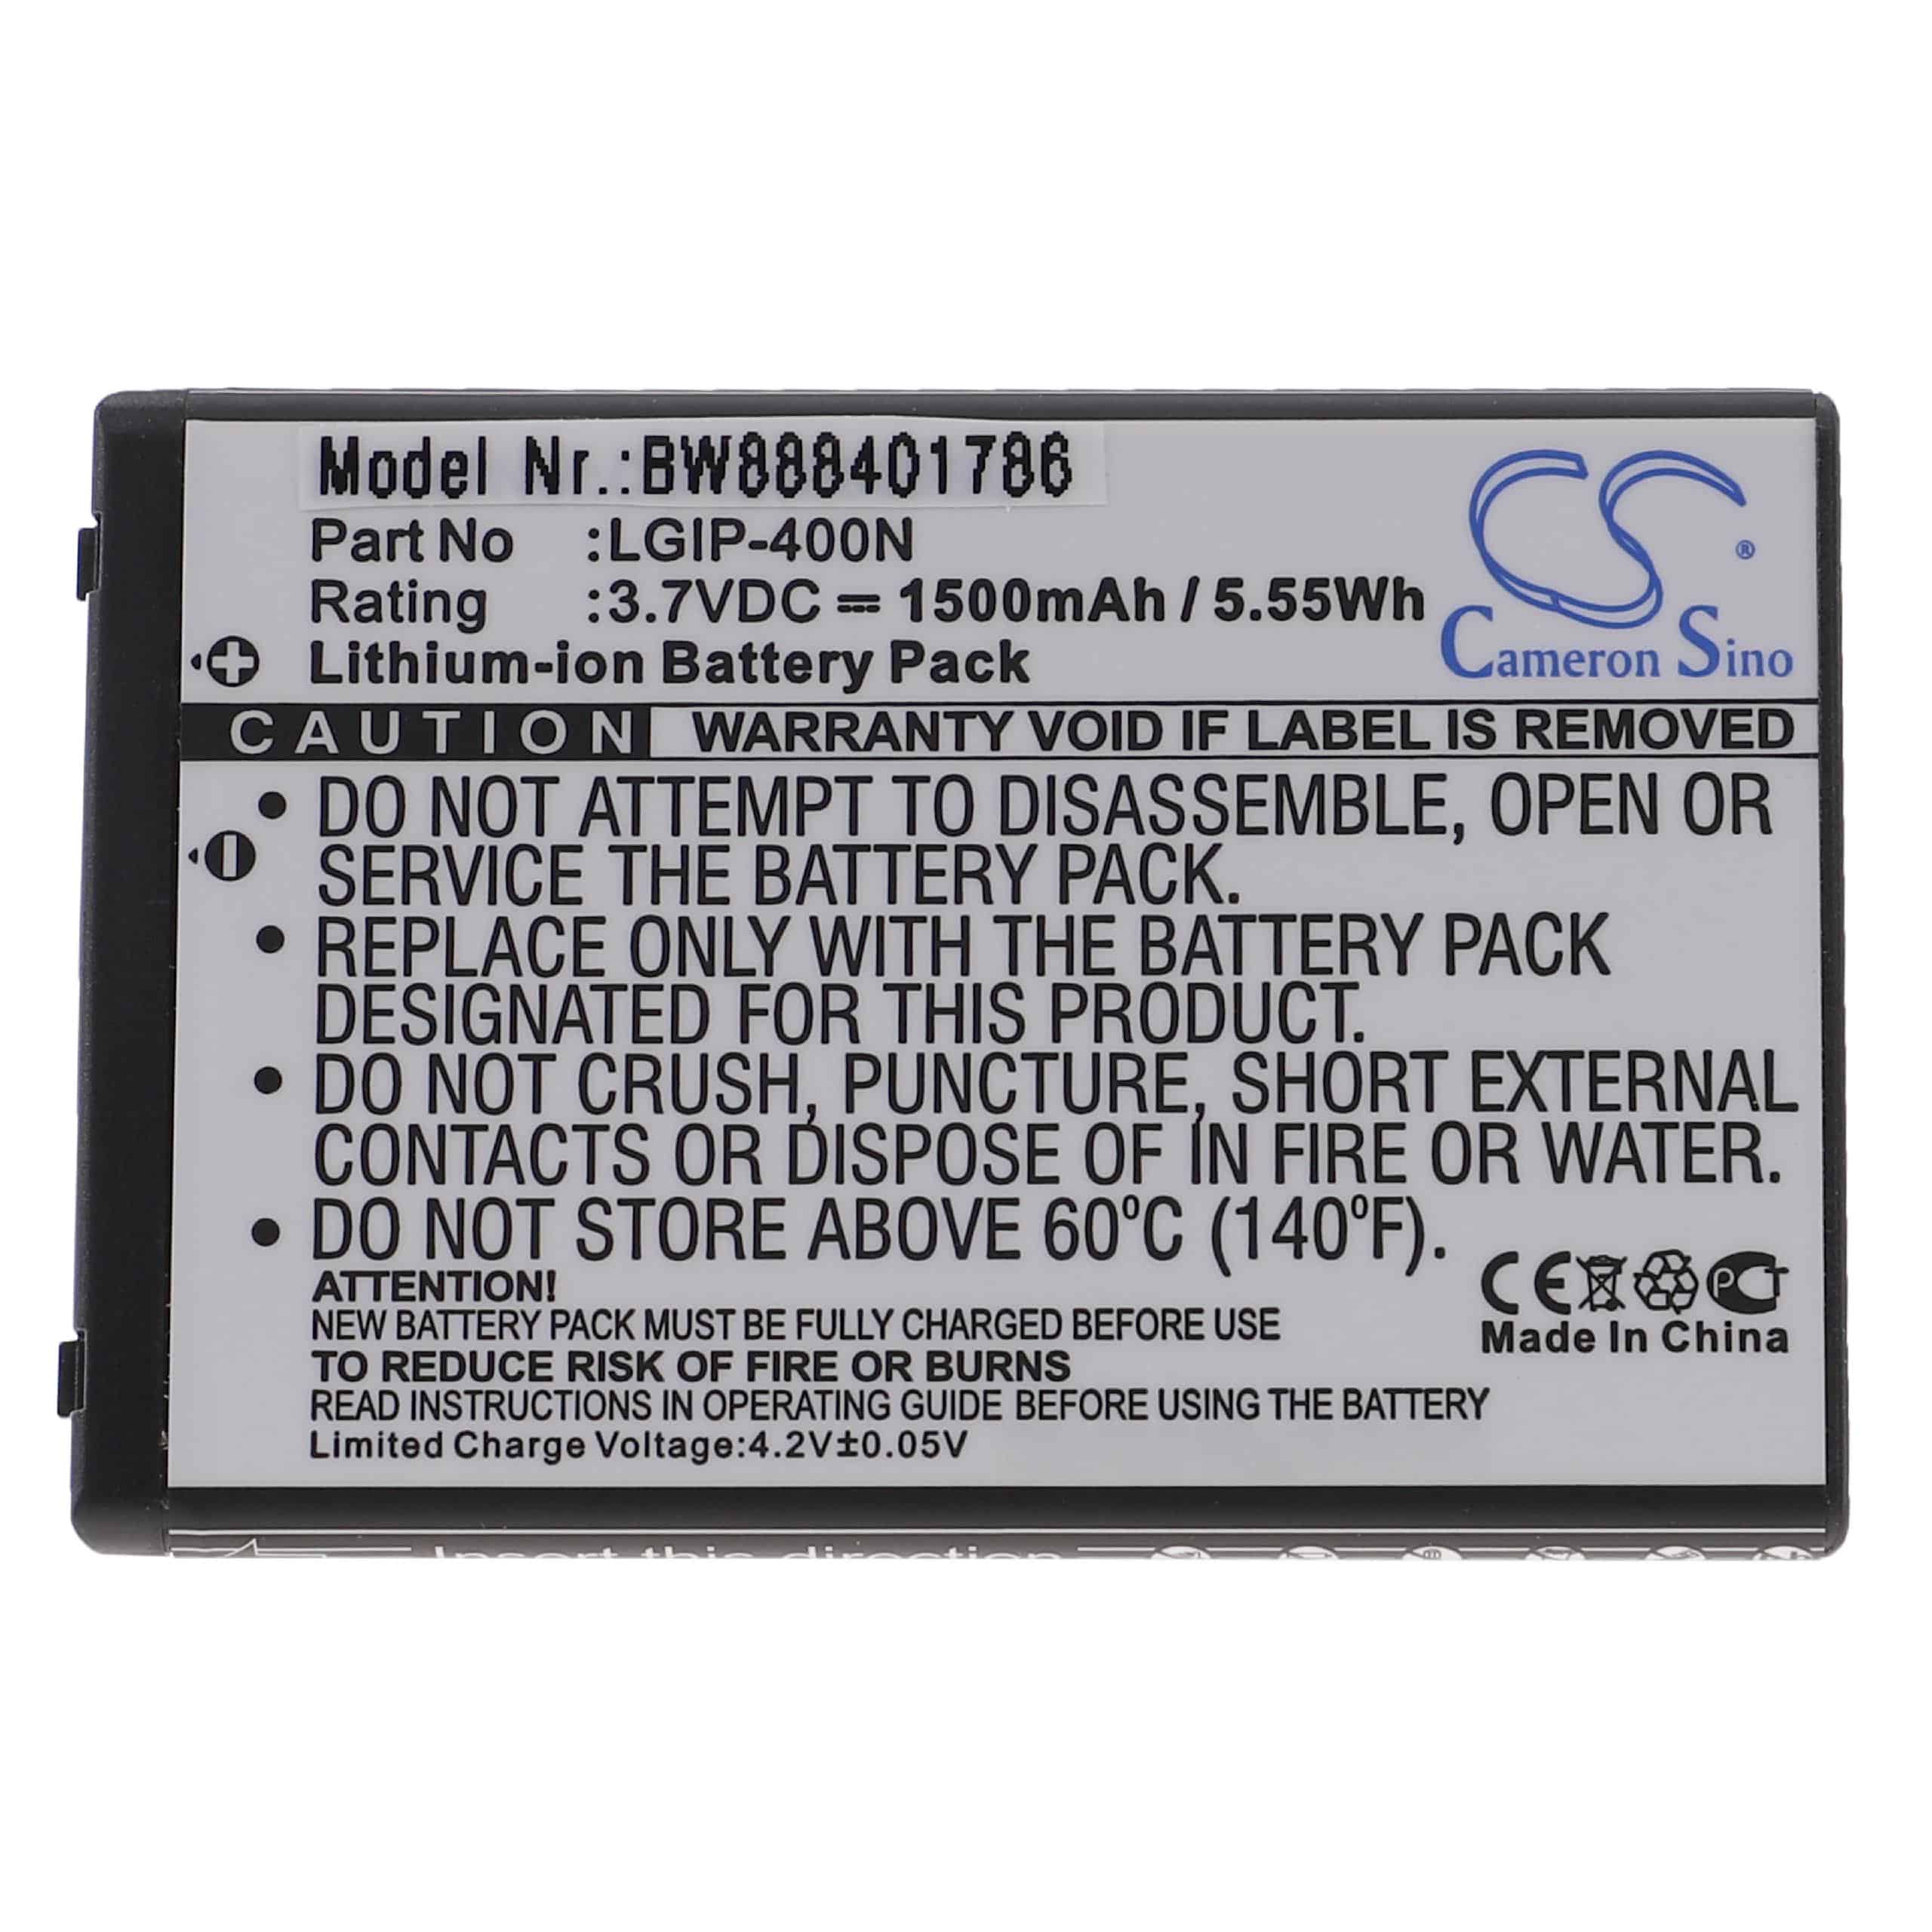 Mobile Phone Battery Replacement for LG SBPL0102302, SBPL0102301, IP-400V, IP-400N - 1500mAh 3.7V Li-Ion